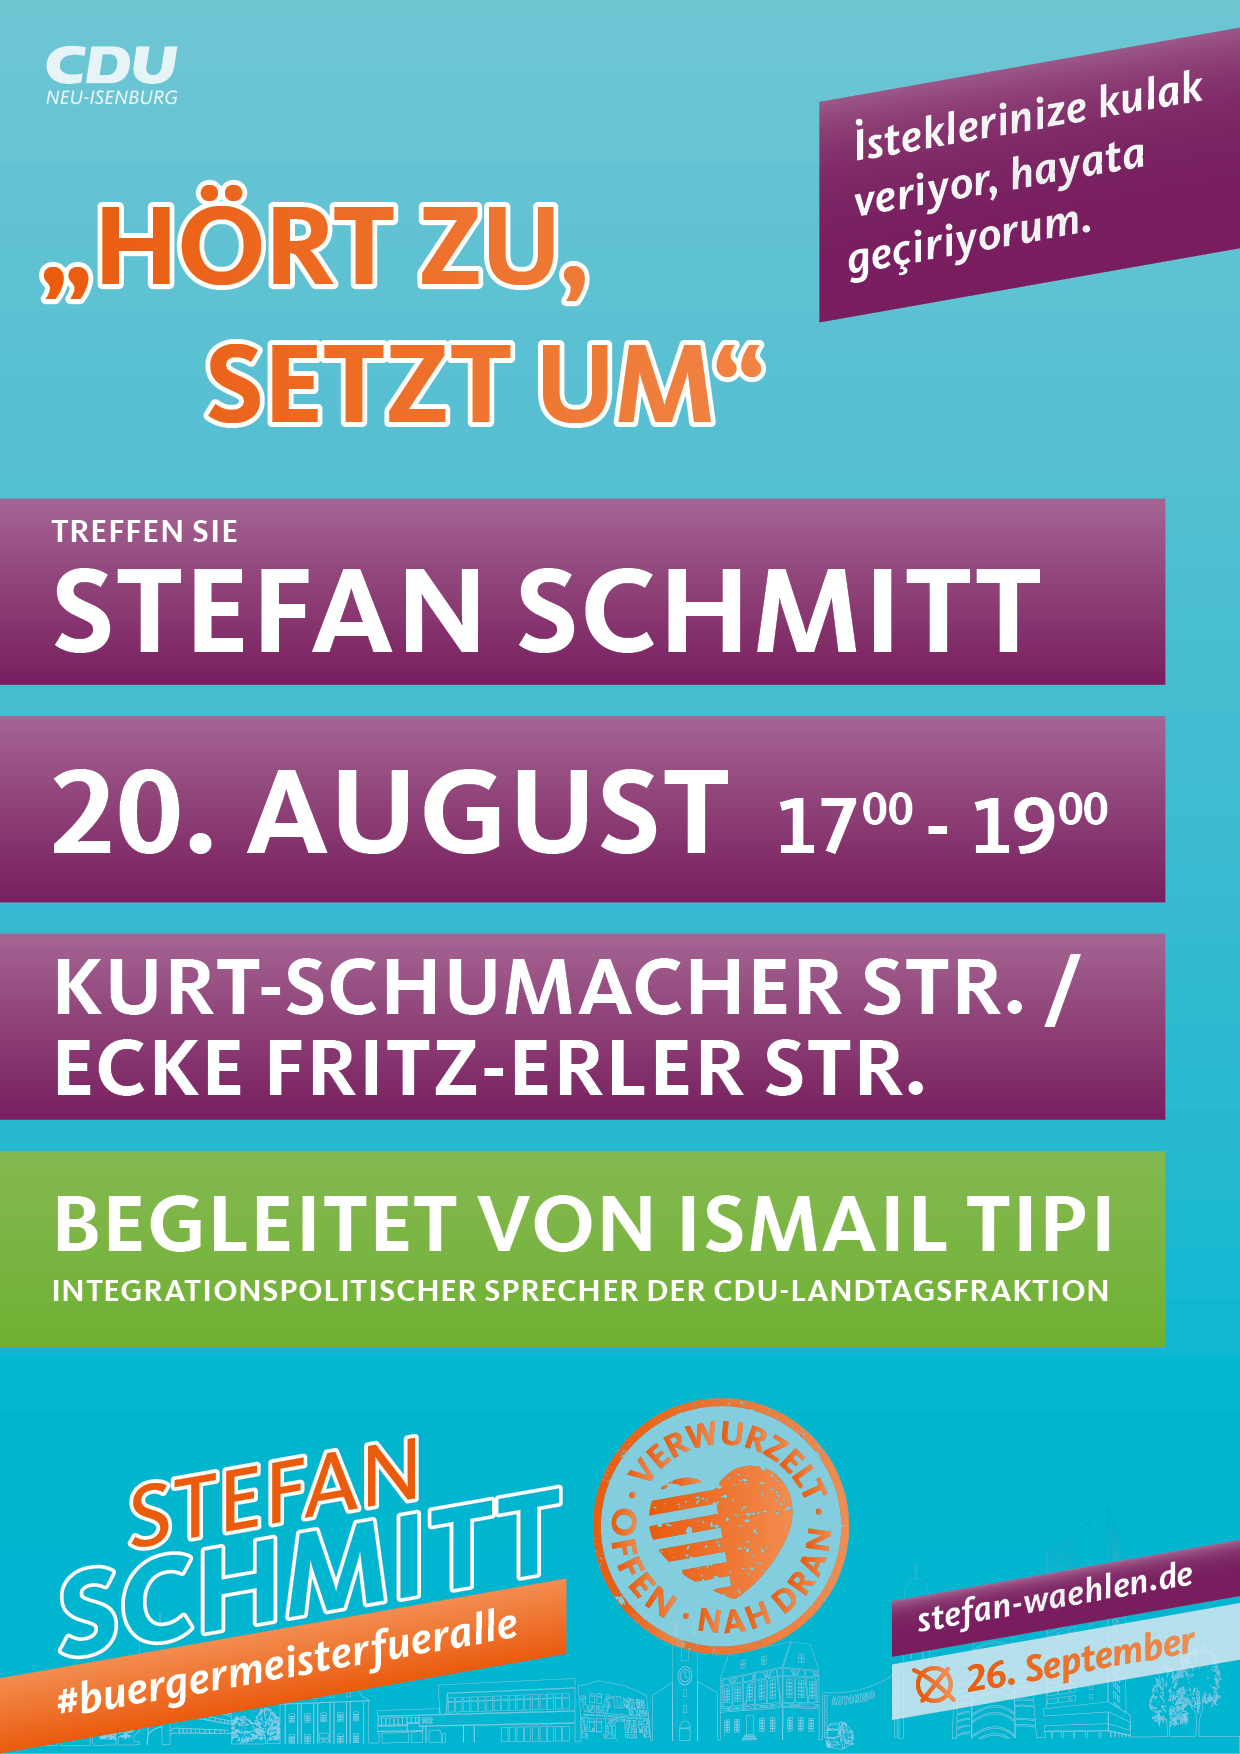 Plakat Treffen Sie Stefan Schmitt am 20. August von 17 - 19 Uhr